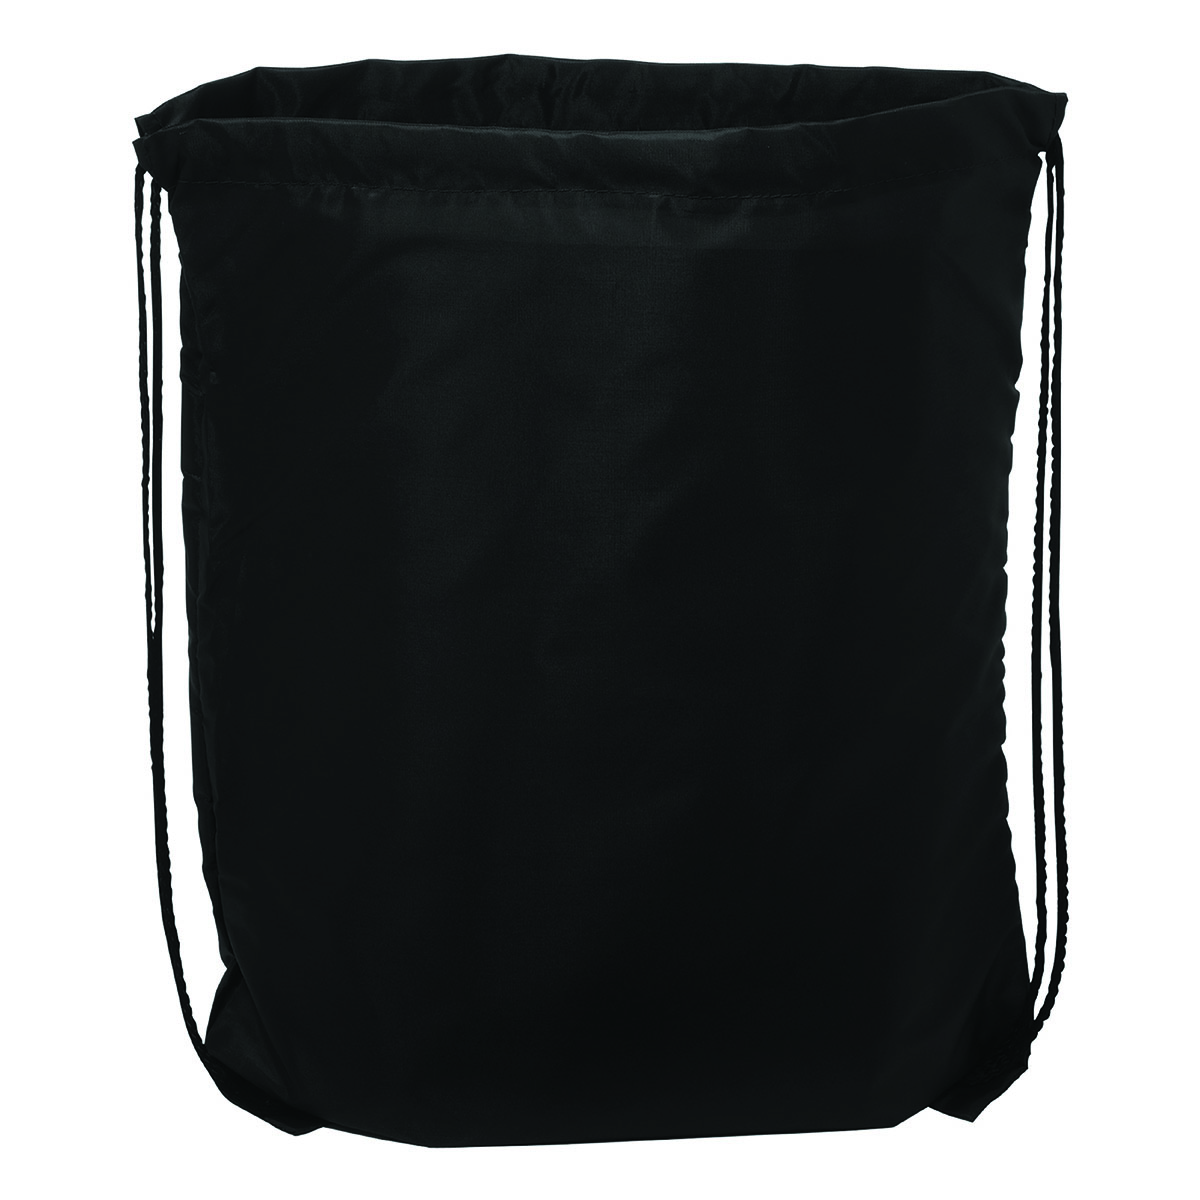 Black Cinch Up Backpack Bag